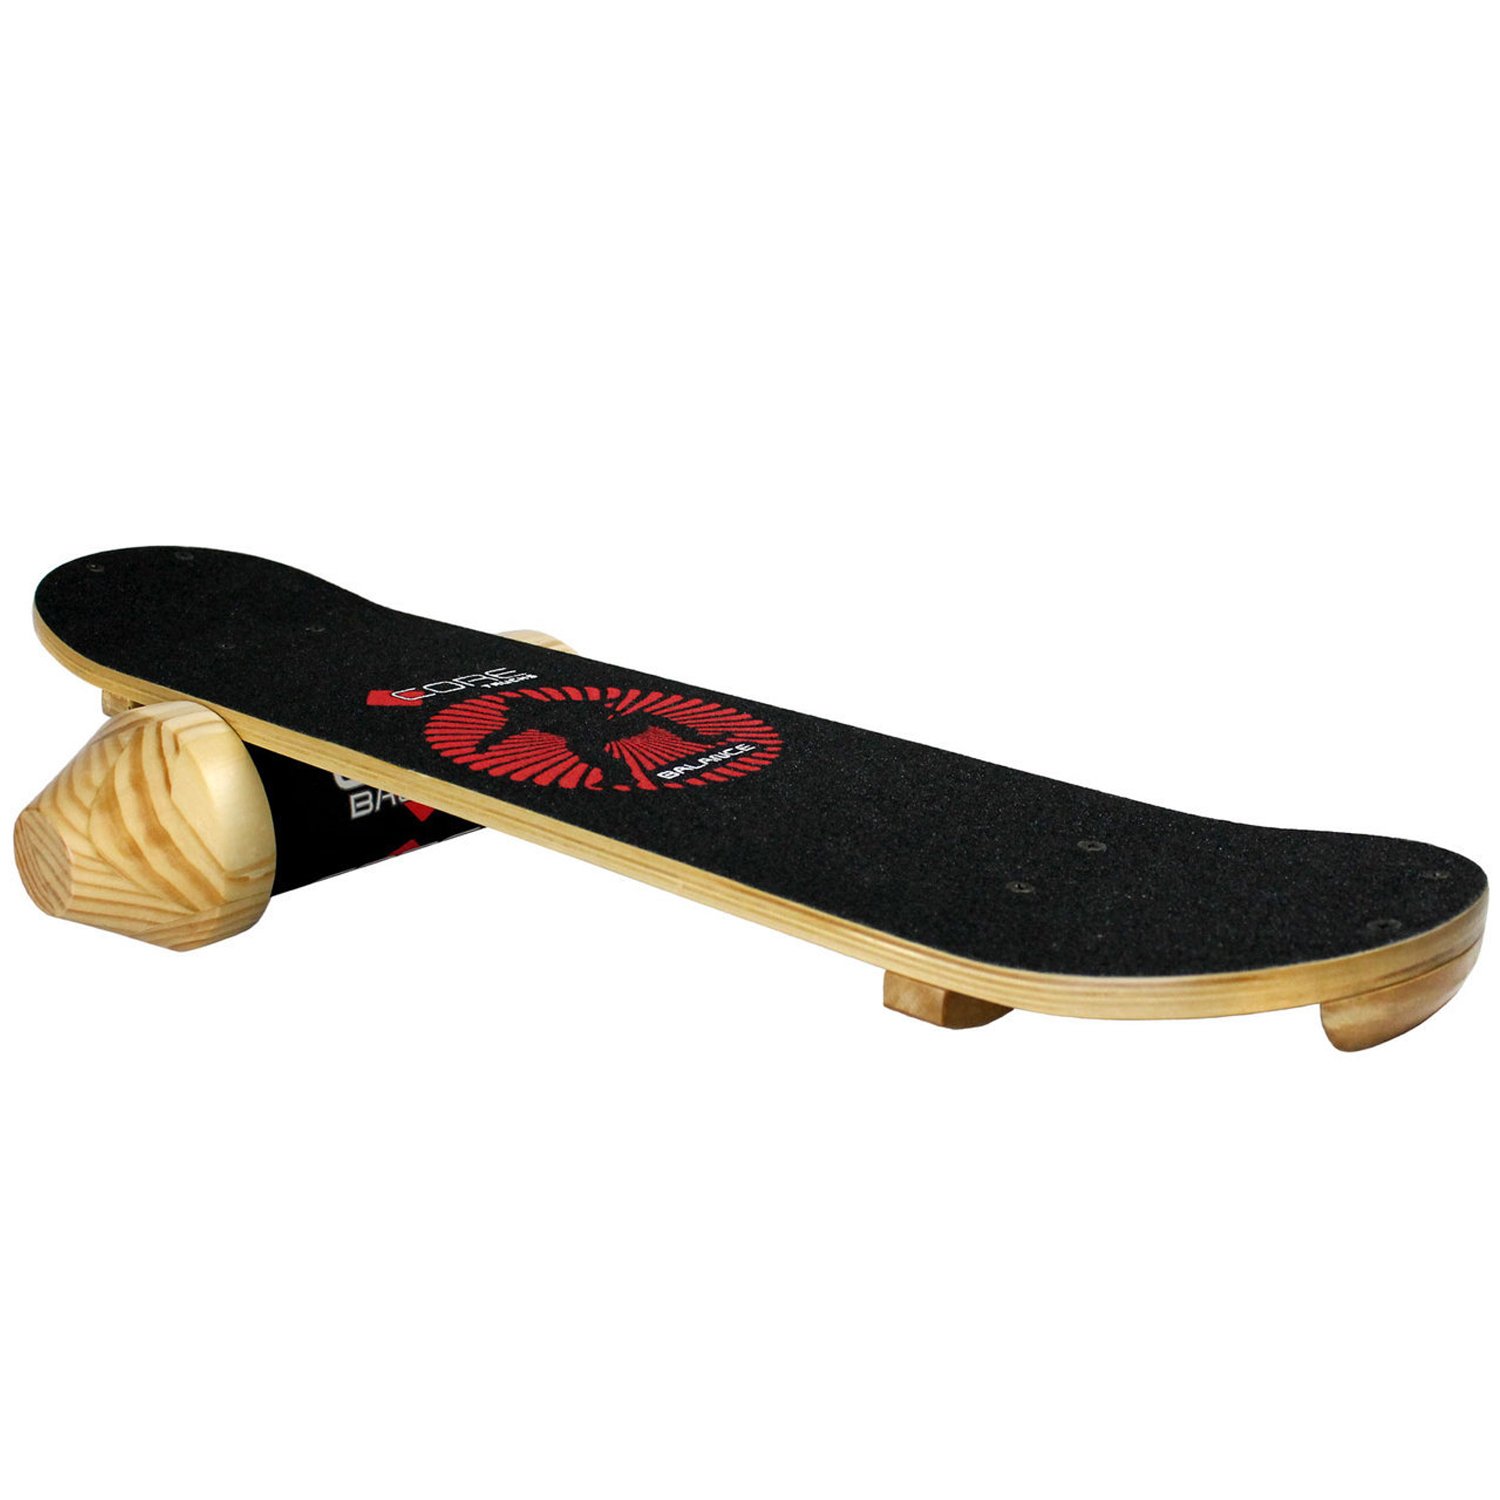 送料無料Core Balance Board Trainer Snow Surf Indoor Training Skateboard 8.0 Natural by Core並行輸入品